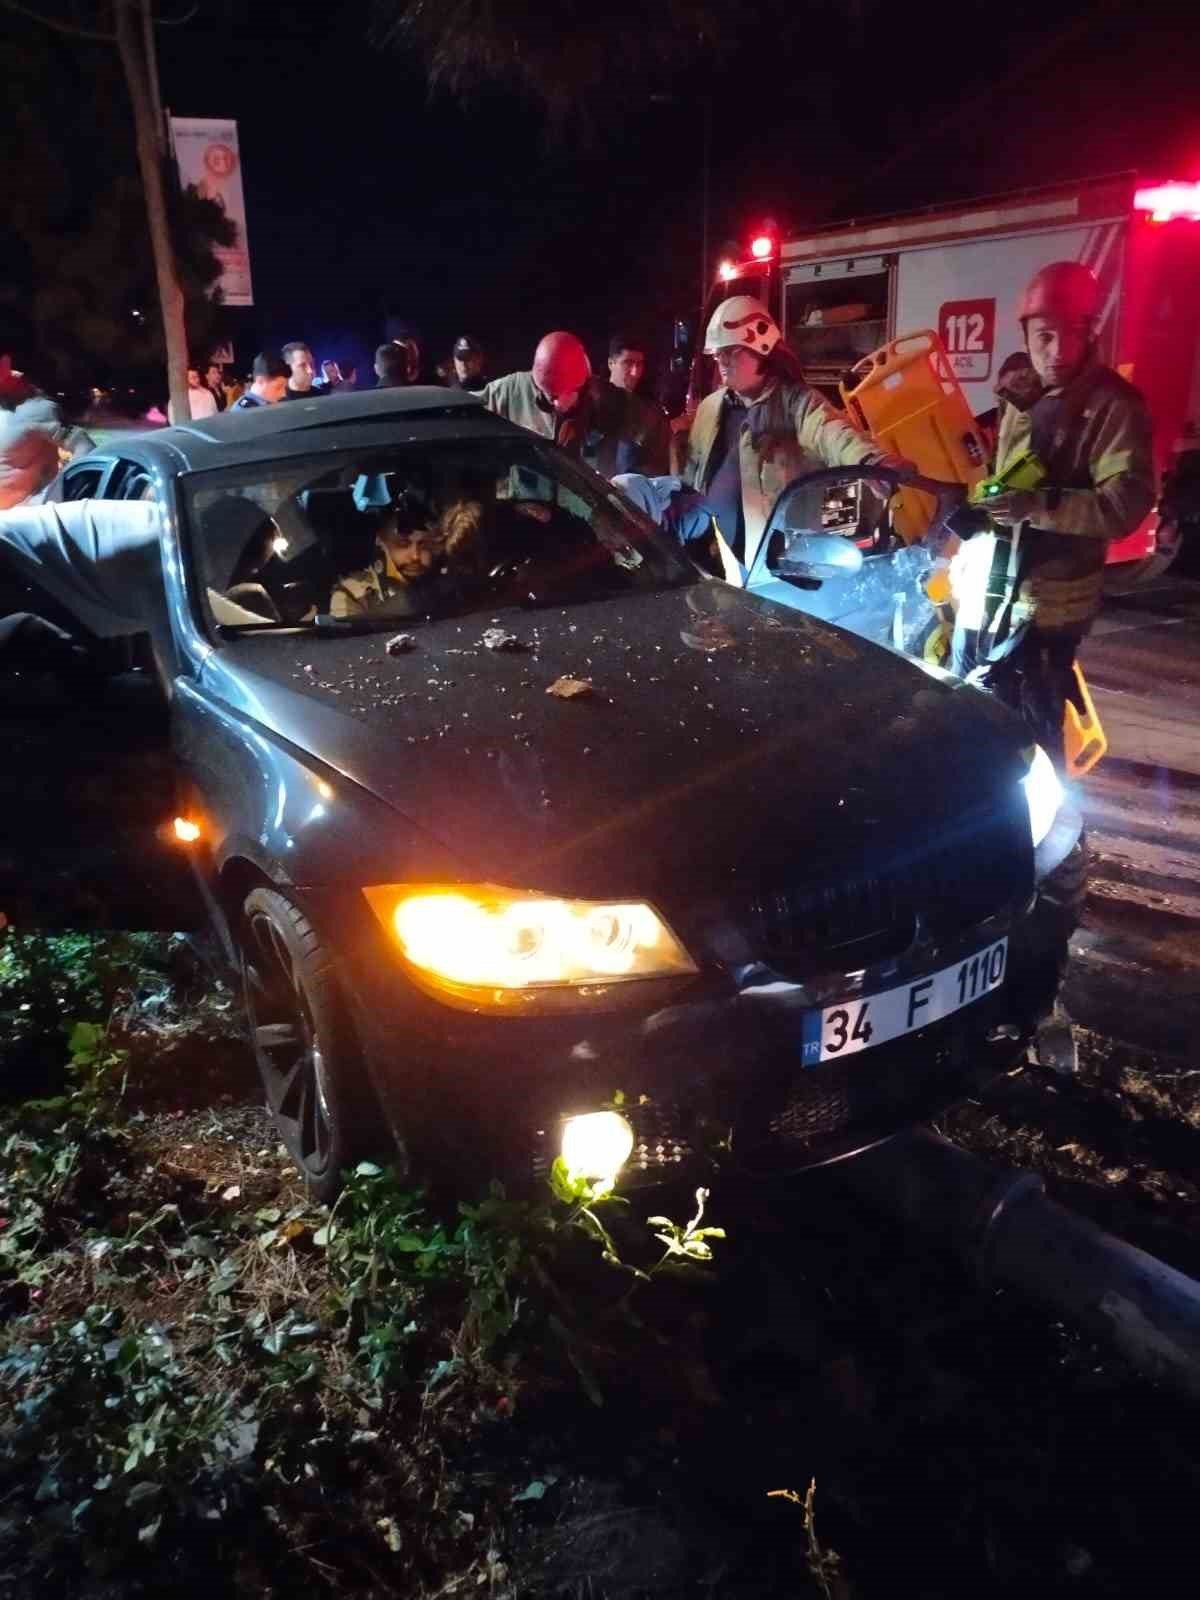 Kadıköy’de kontrolden çıkan araç aydınlatma direğine çarptı: 1 ağır yaralı
